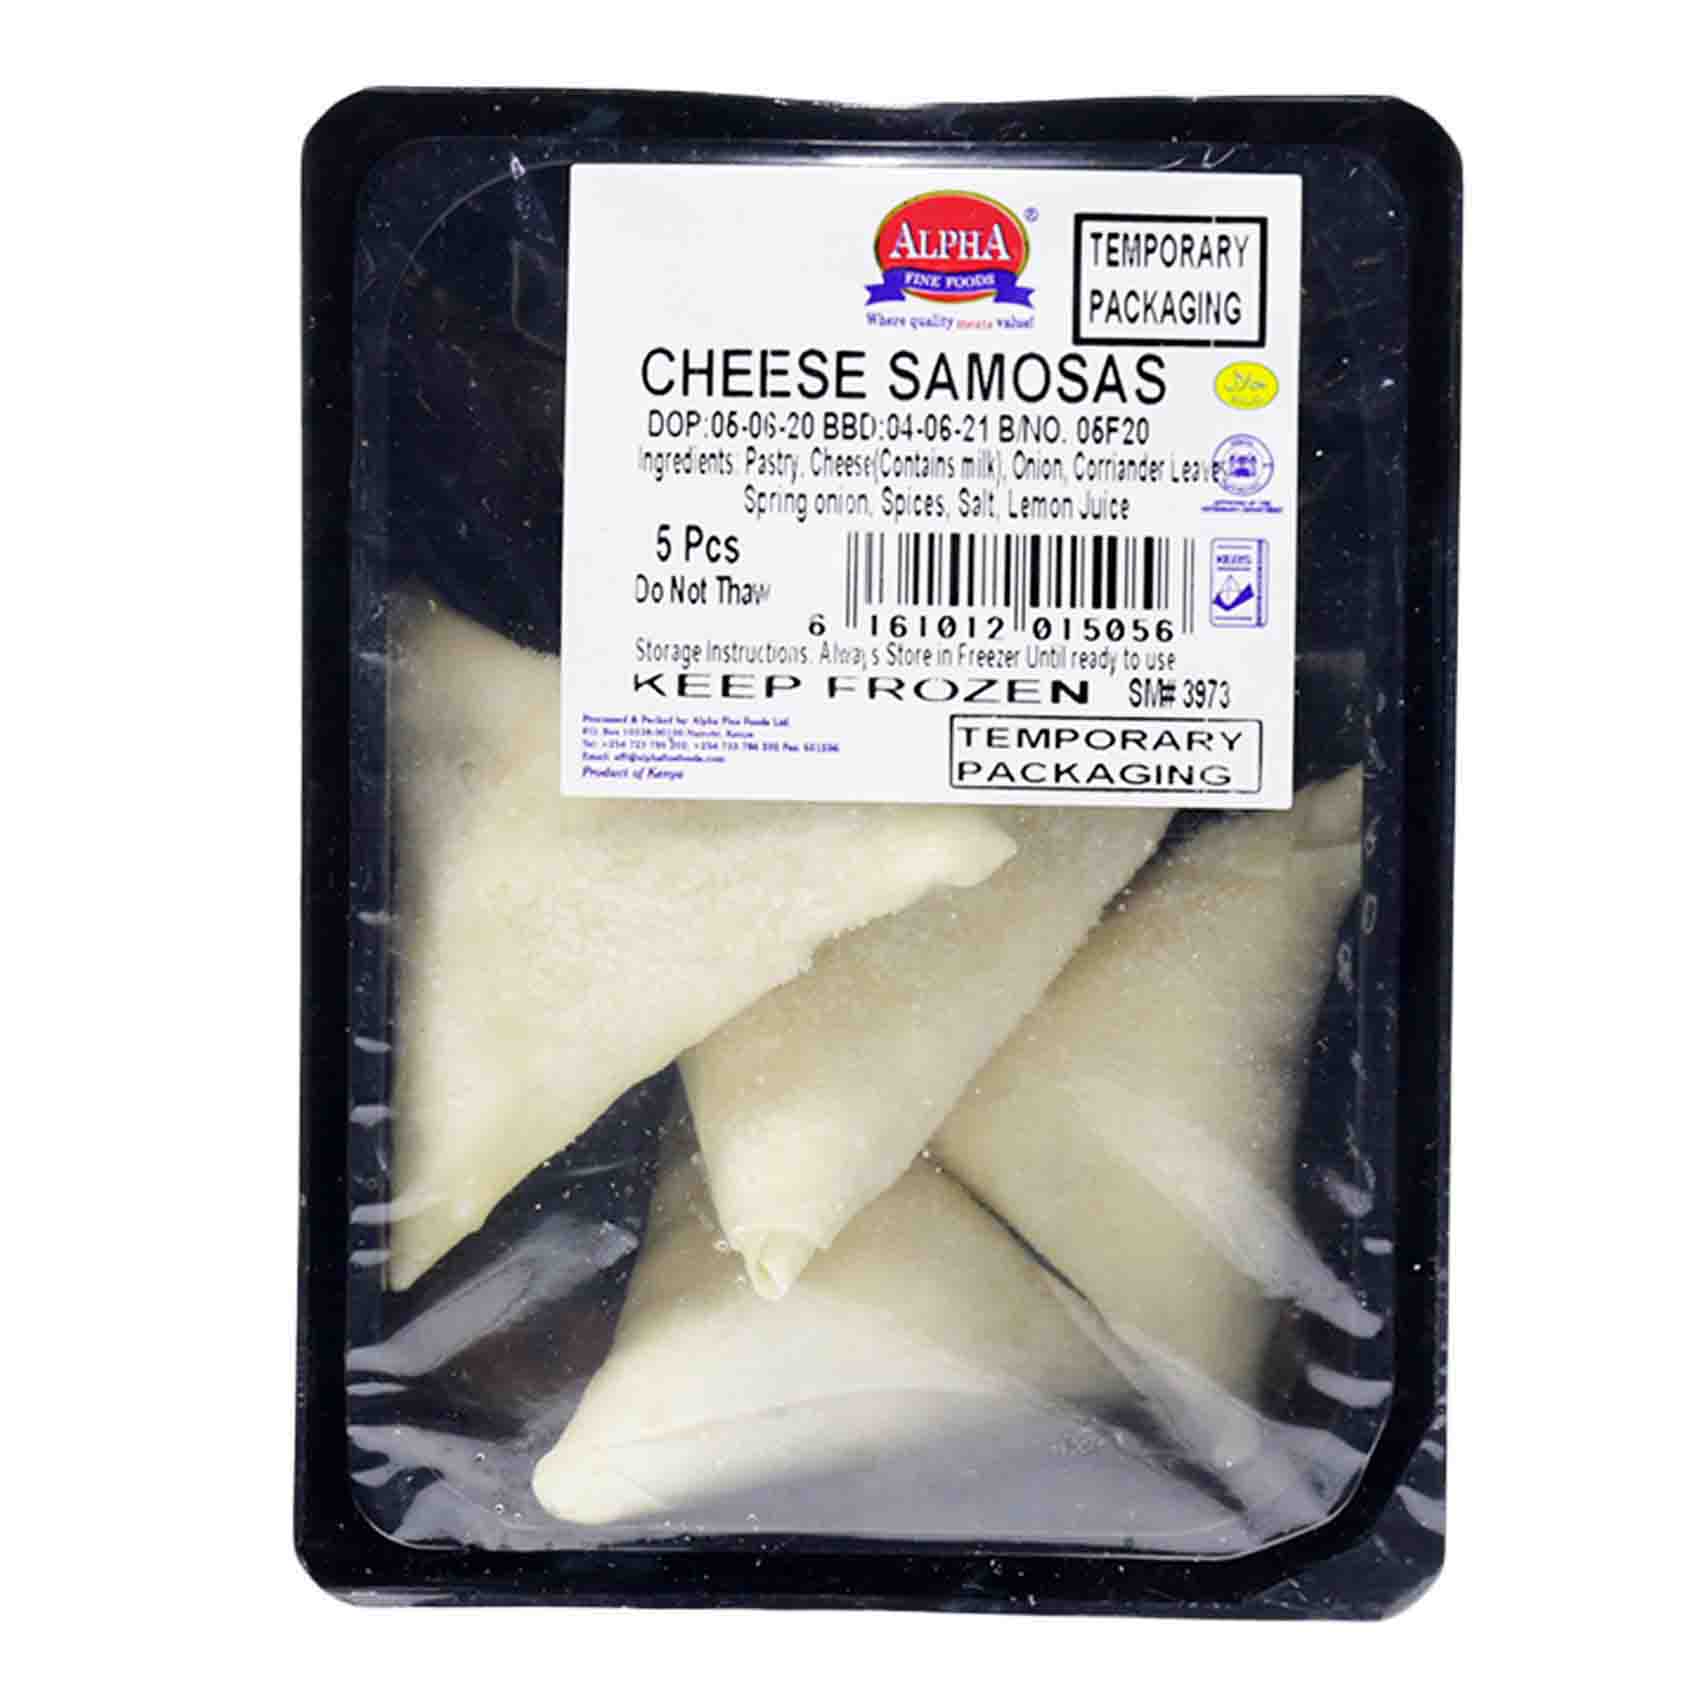 Al&#39;s Kitchen 5 Cheese Samosas 150g